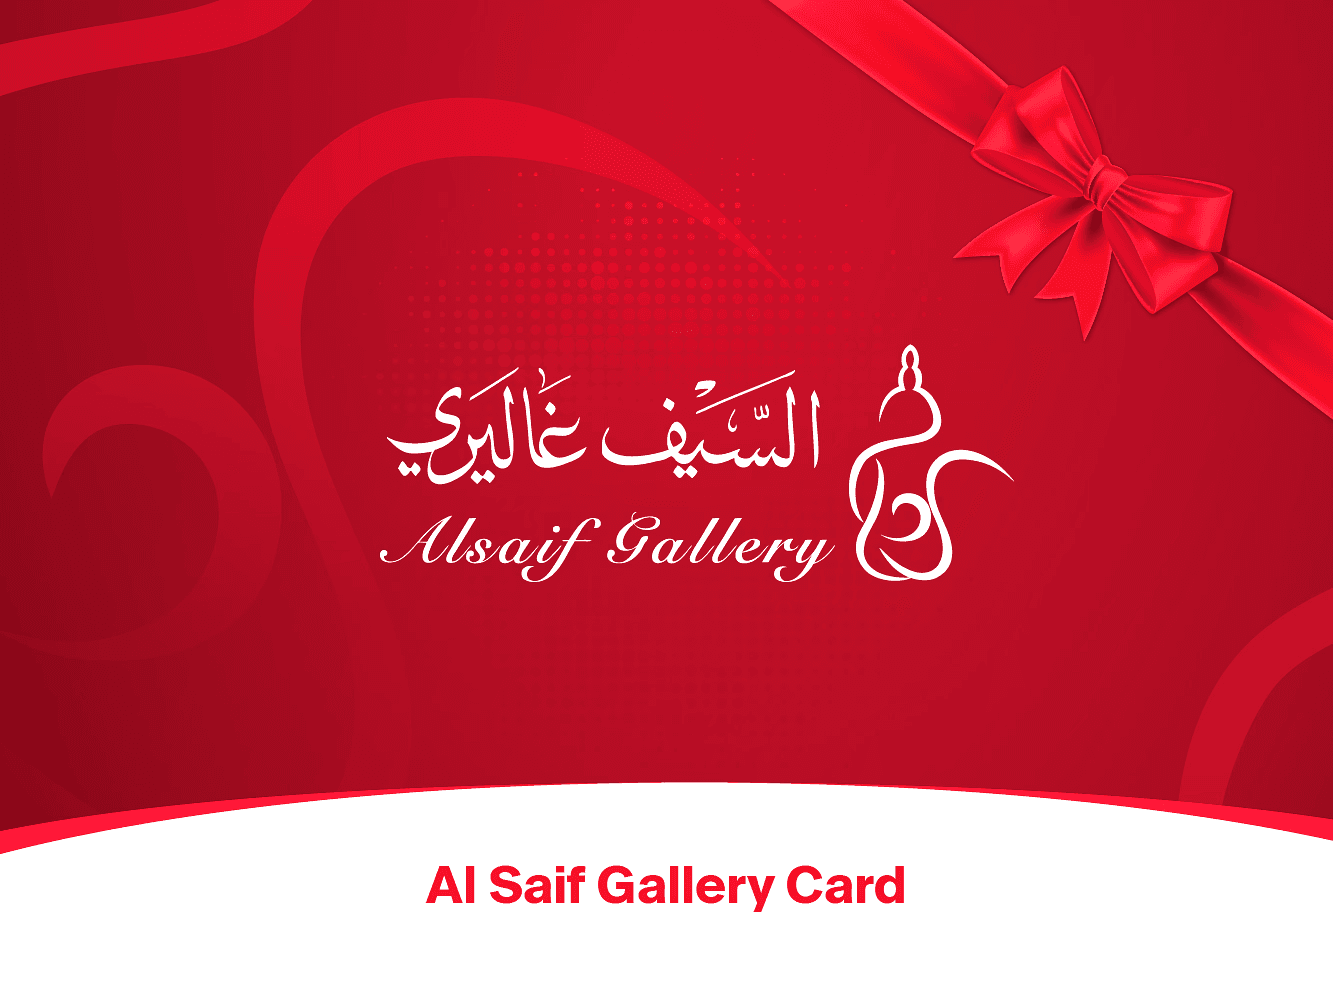 Al Saif Gallery Card